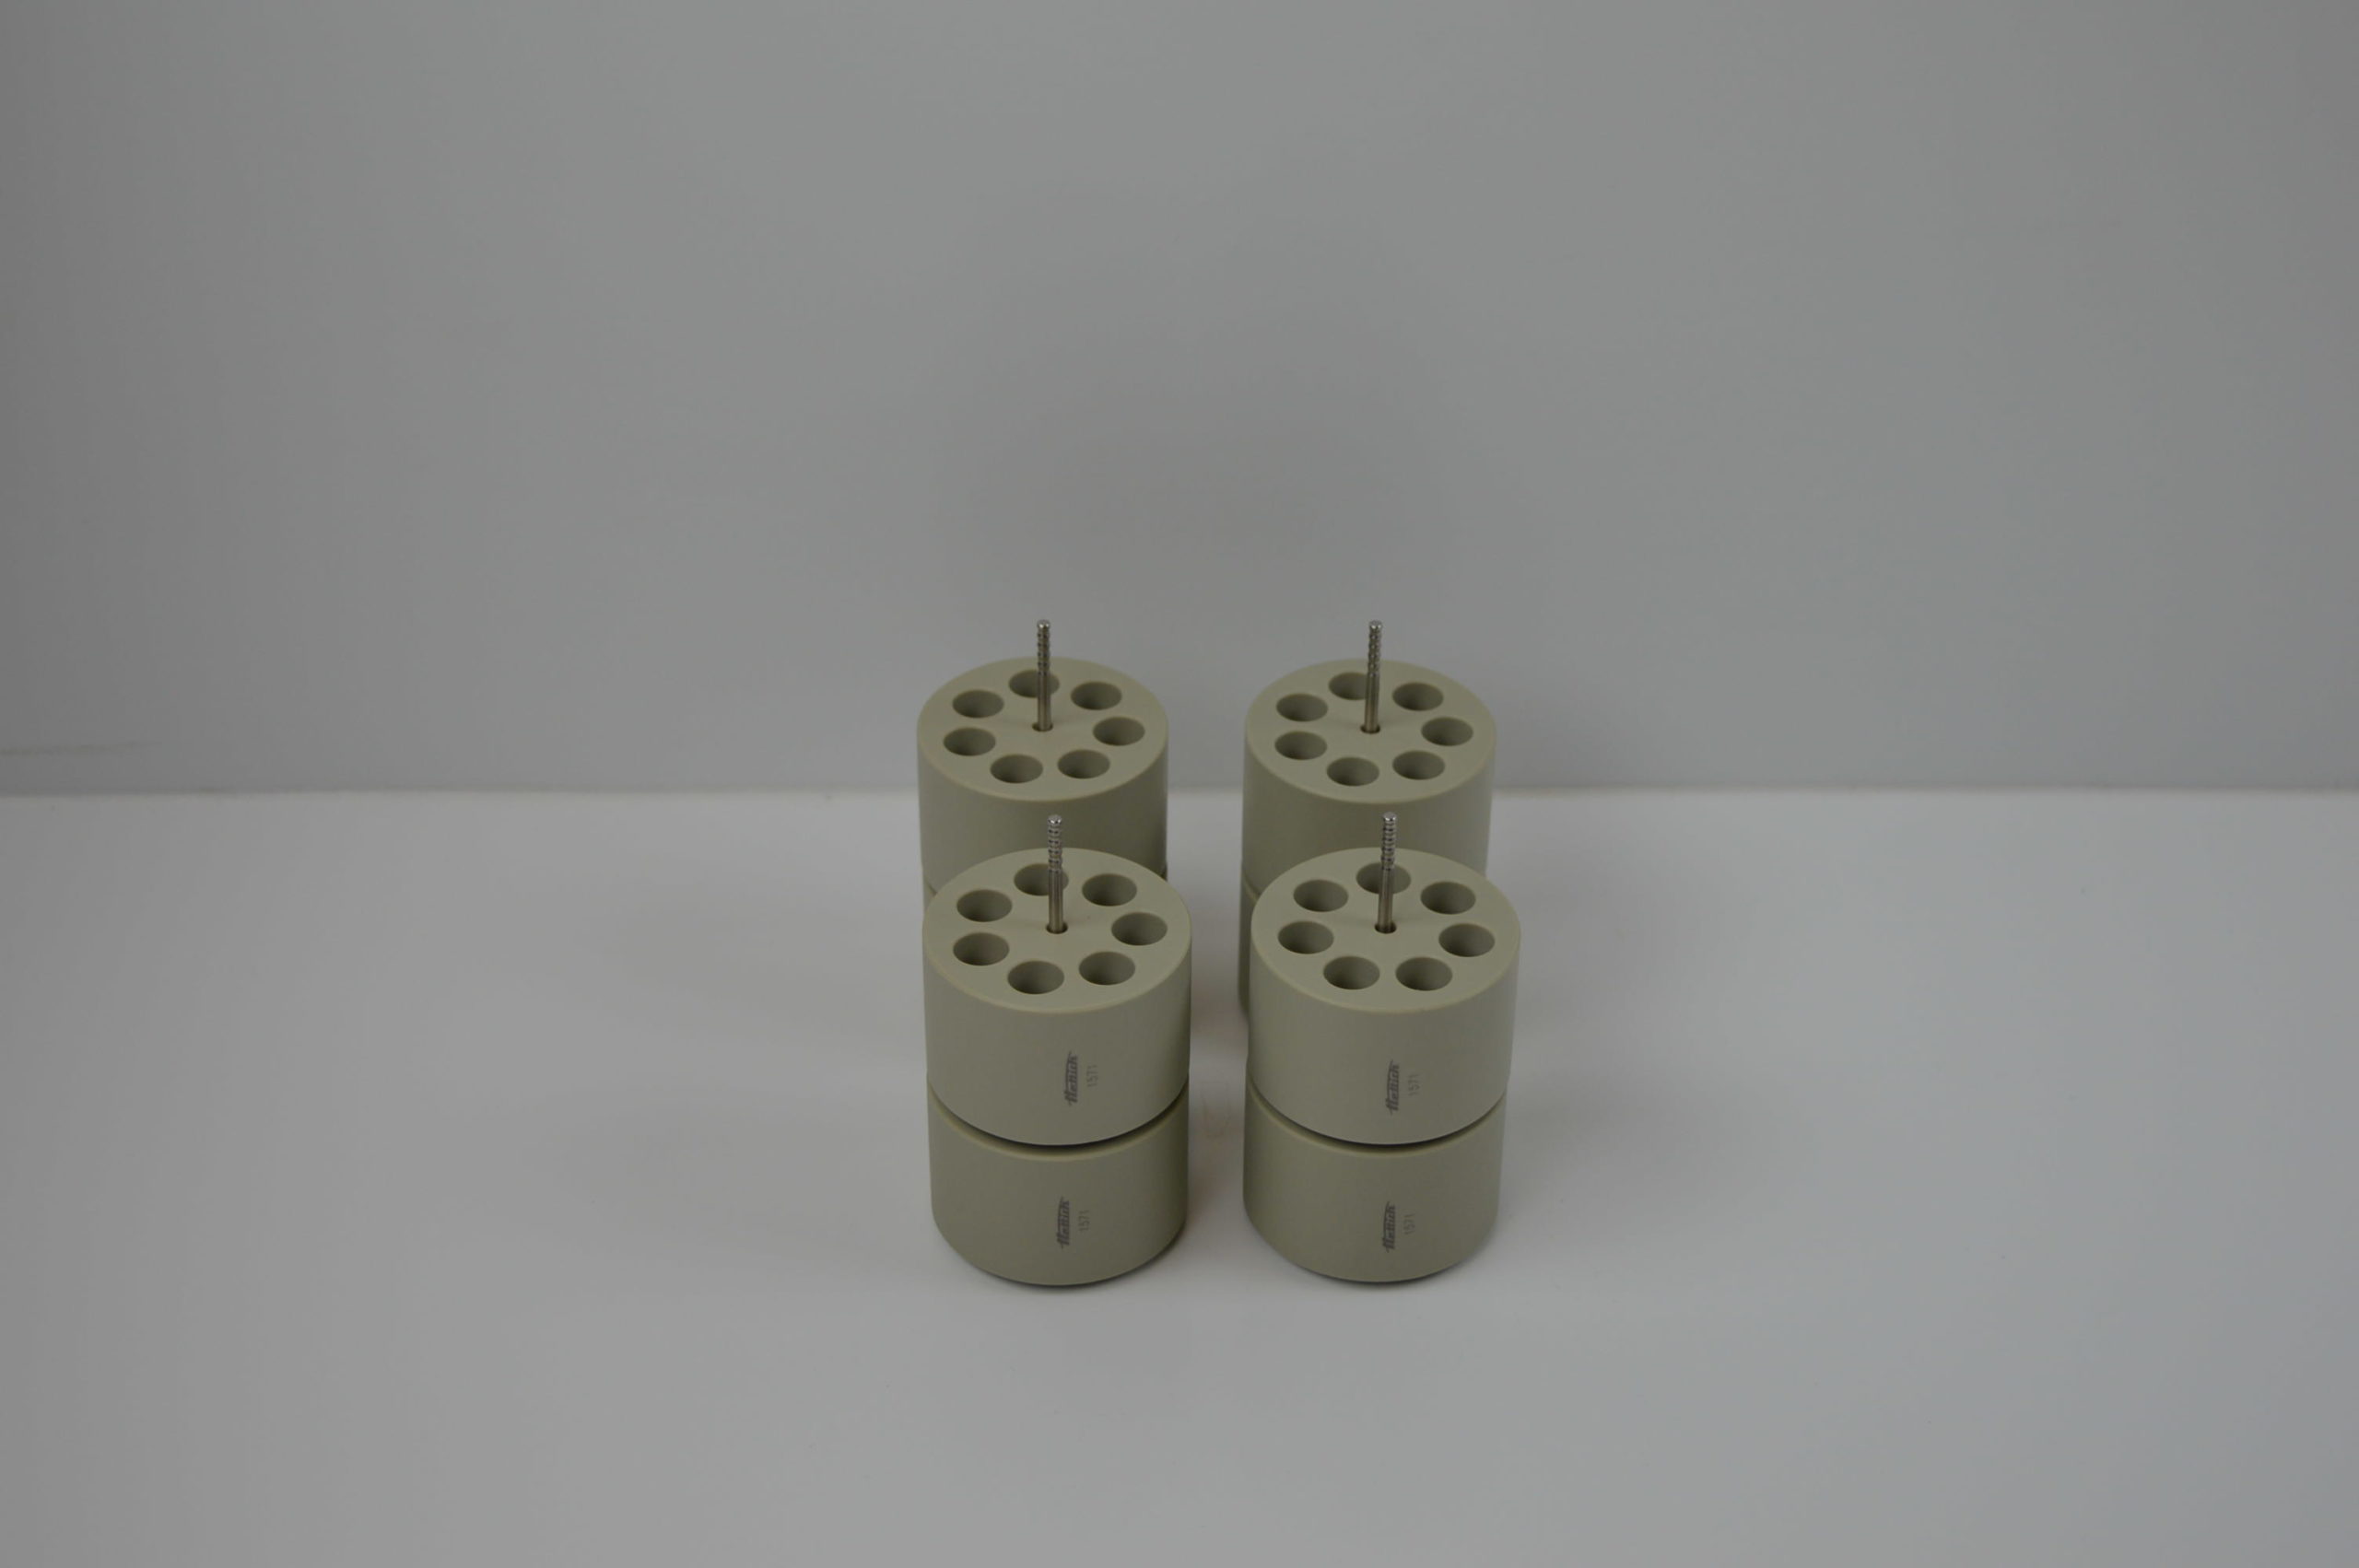 Hettich centrifuge adaptors for microlitre tubes (1.5ml & 2ml)